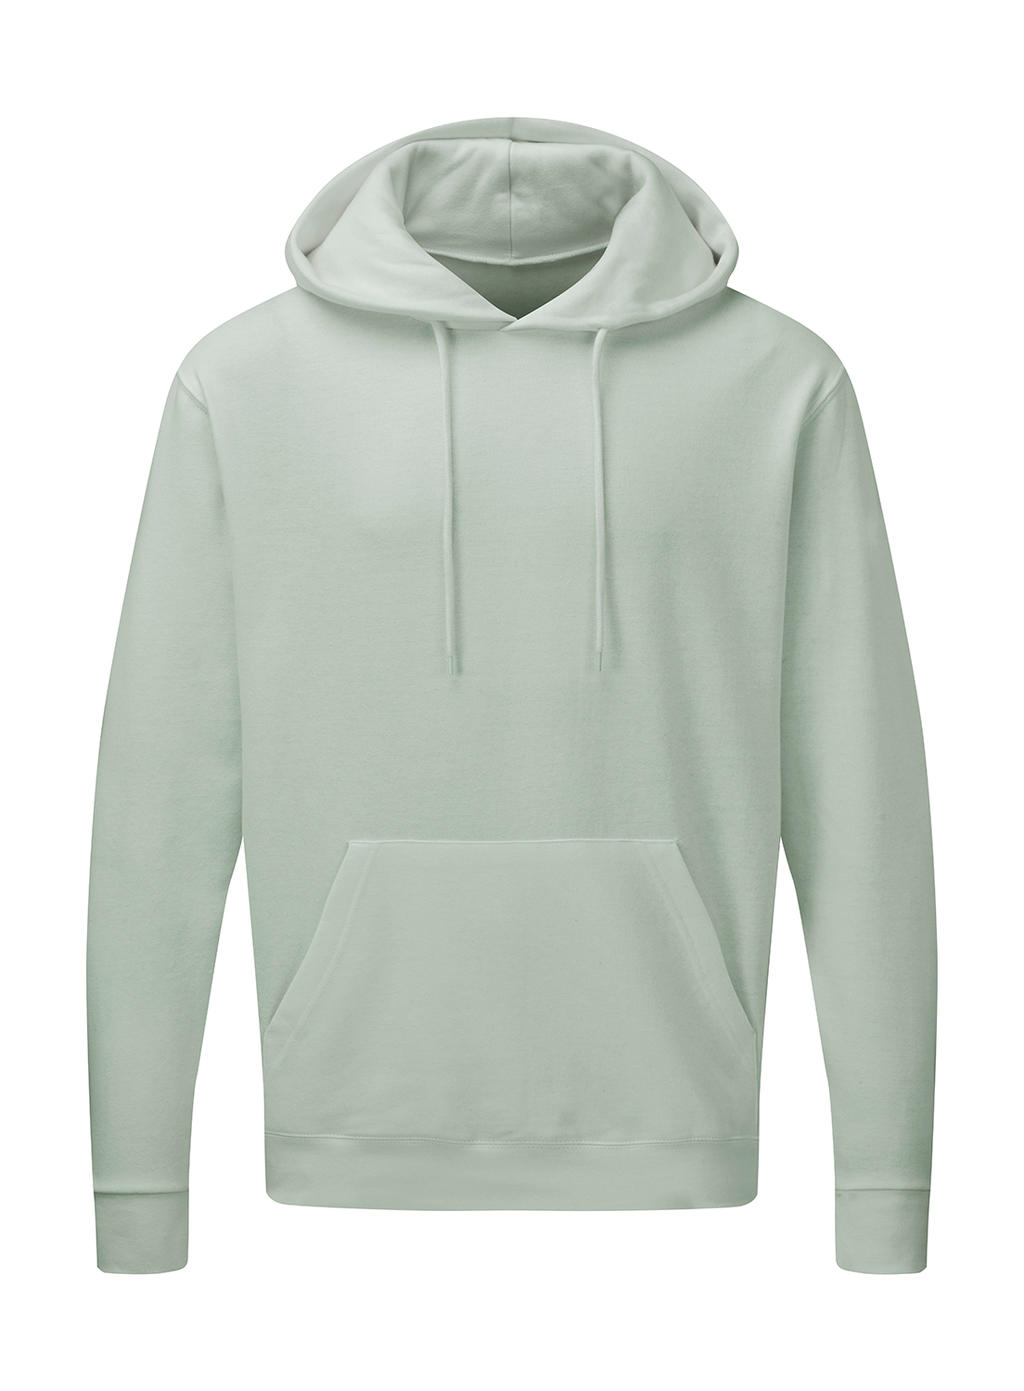  Mens Hooded Sweatshirt in Farbe Mercury Grey